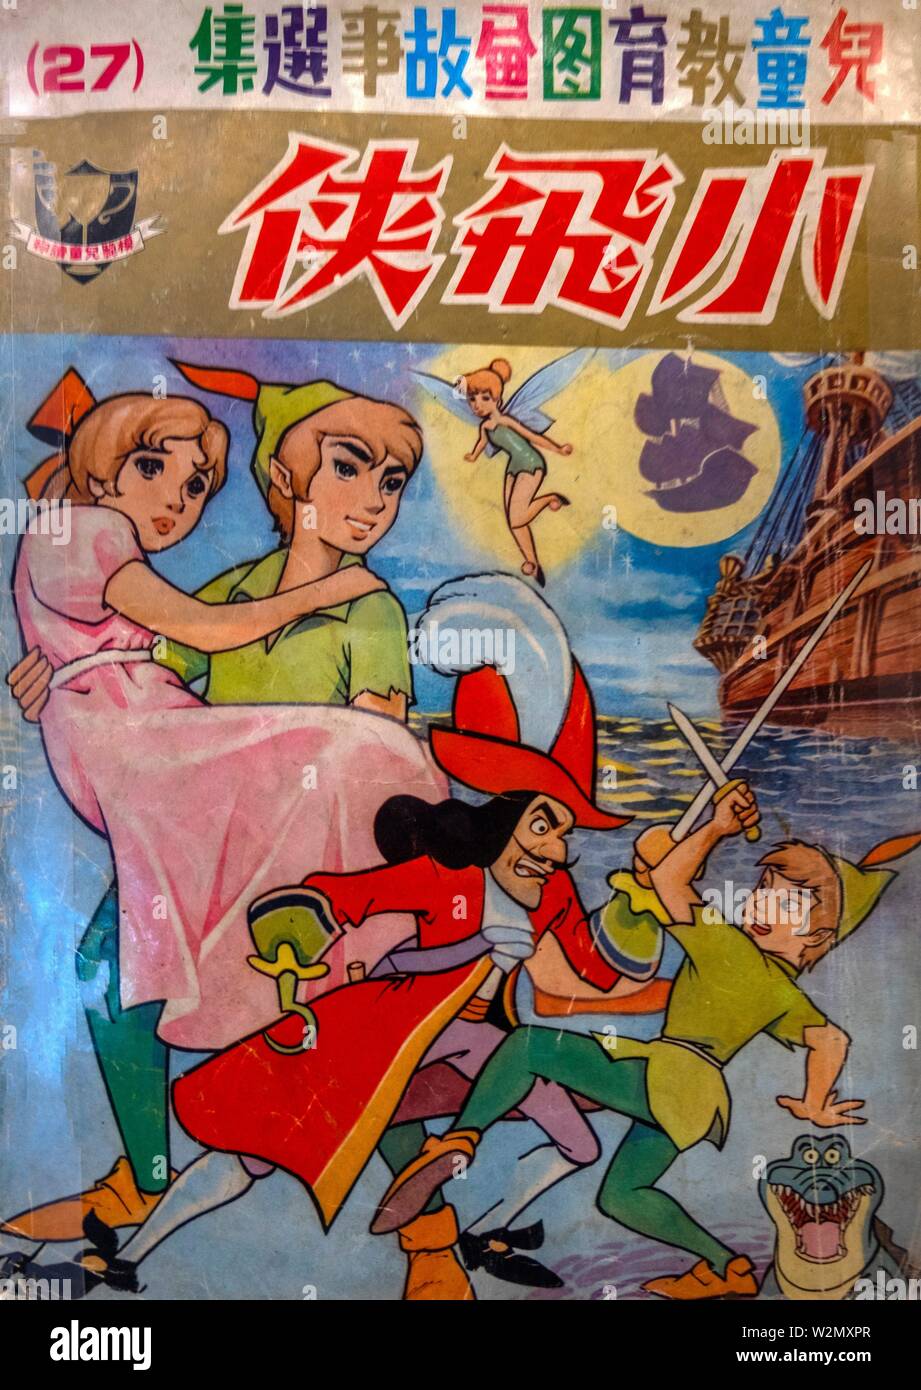 Hong Kong. Comics in chinese of Xiao Fei Xia (Peter Pan), 1950..Paper. Stock Photo